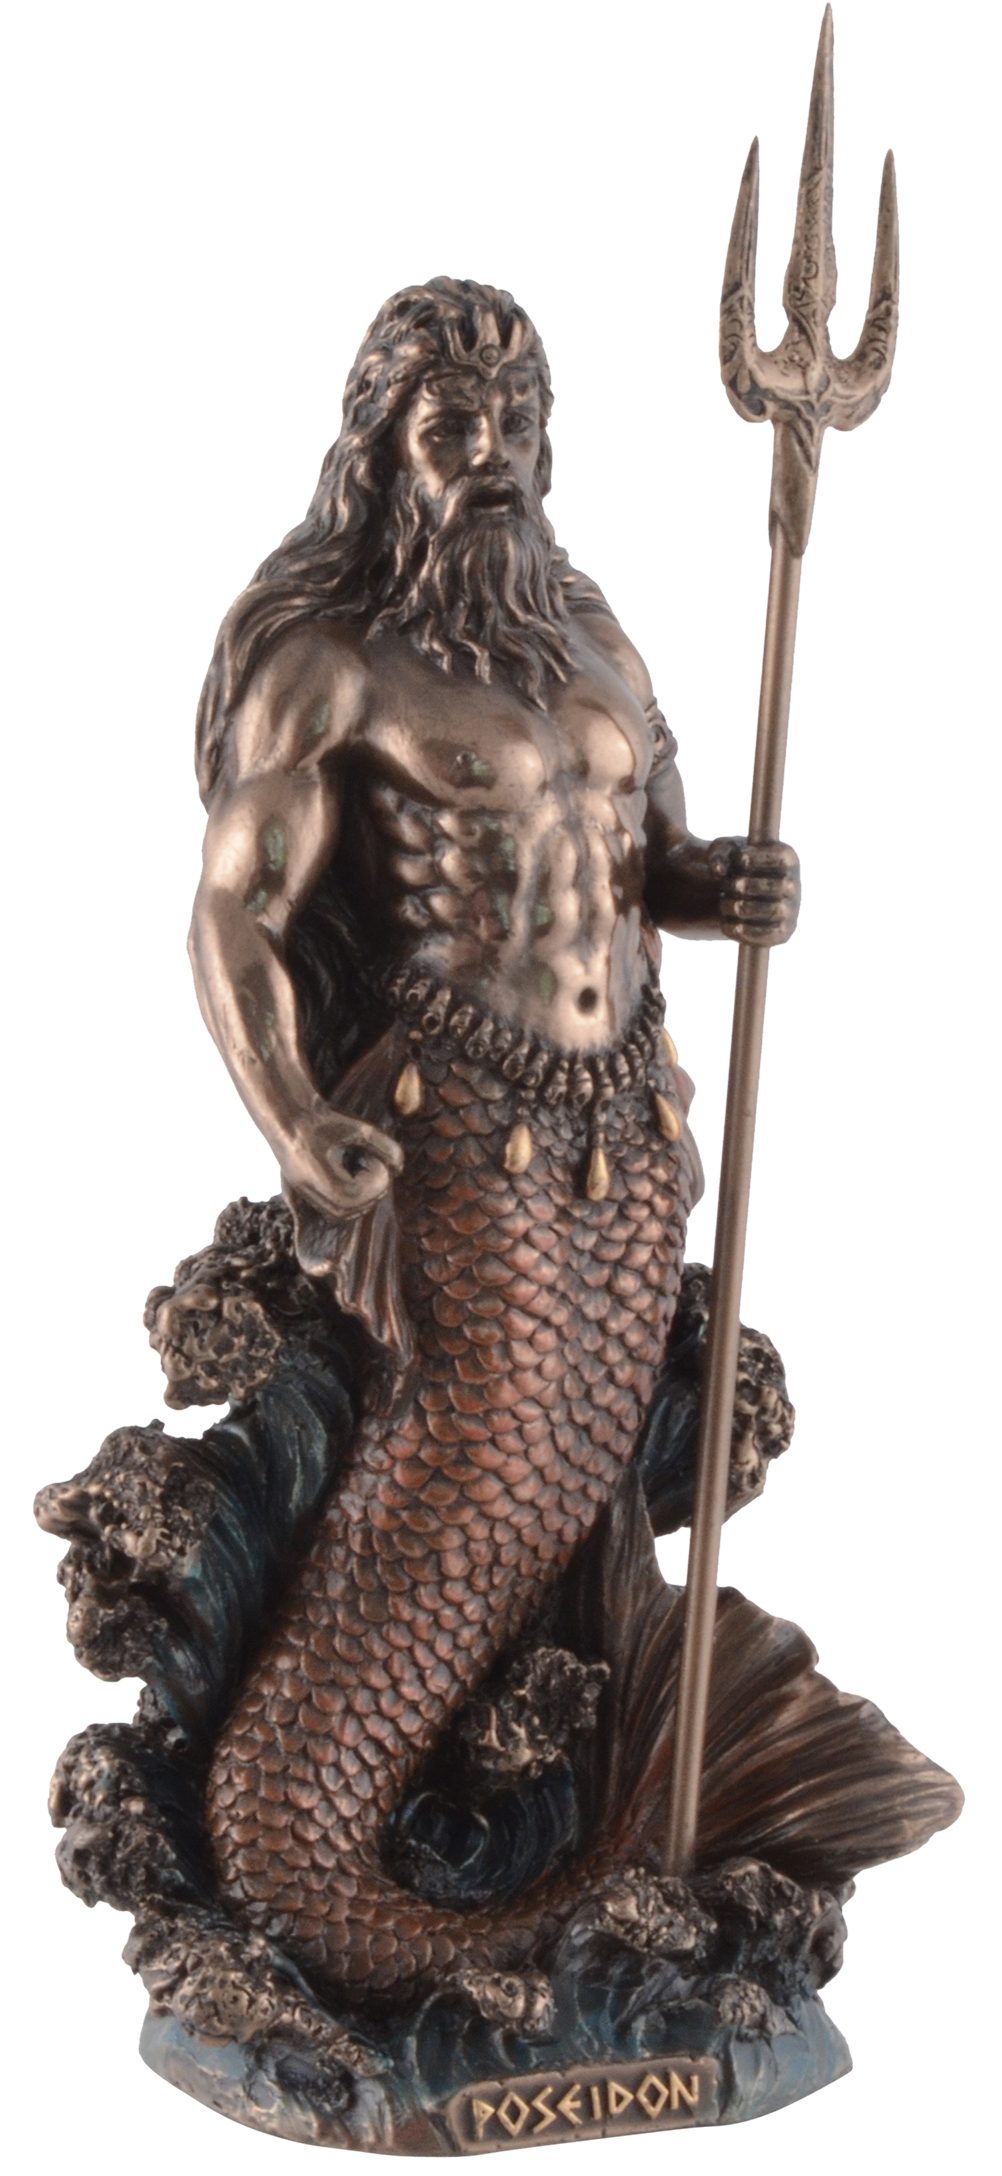 Vogler direct Gmbh Dekofigur Griechischer 8x7x18cm Veronesedesign, ca. Gott L/B/H bronziert/coloriert, Poseidon, Größe